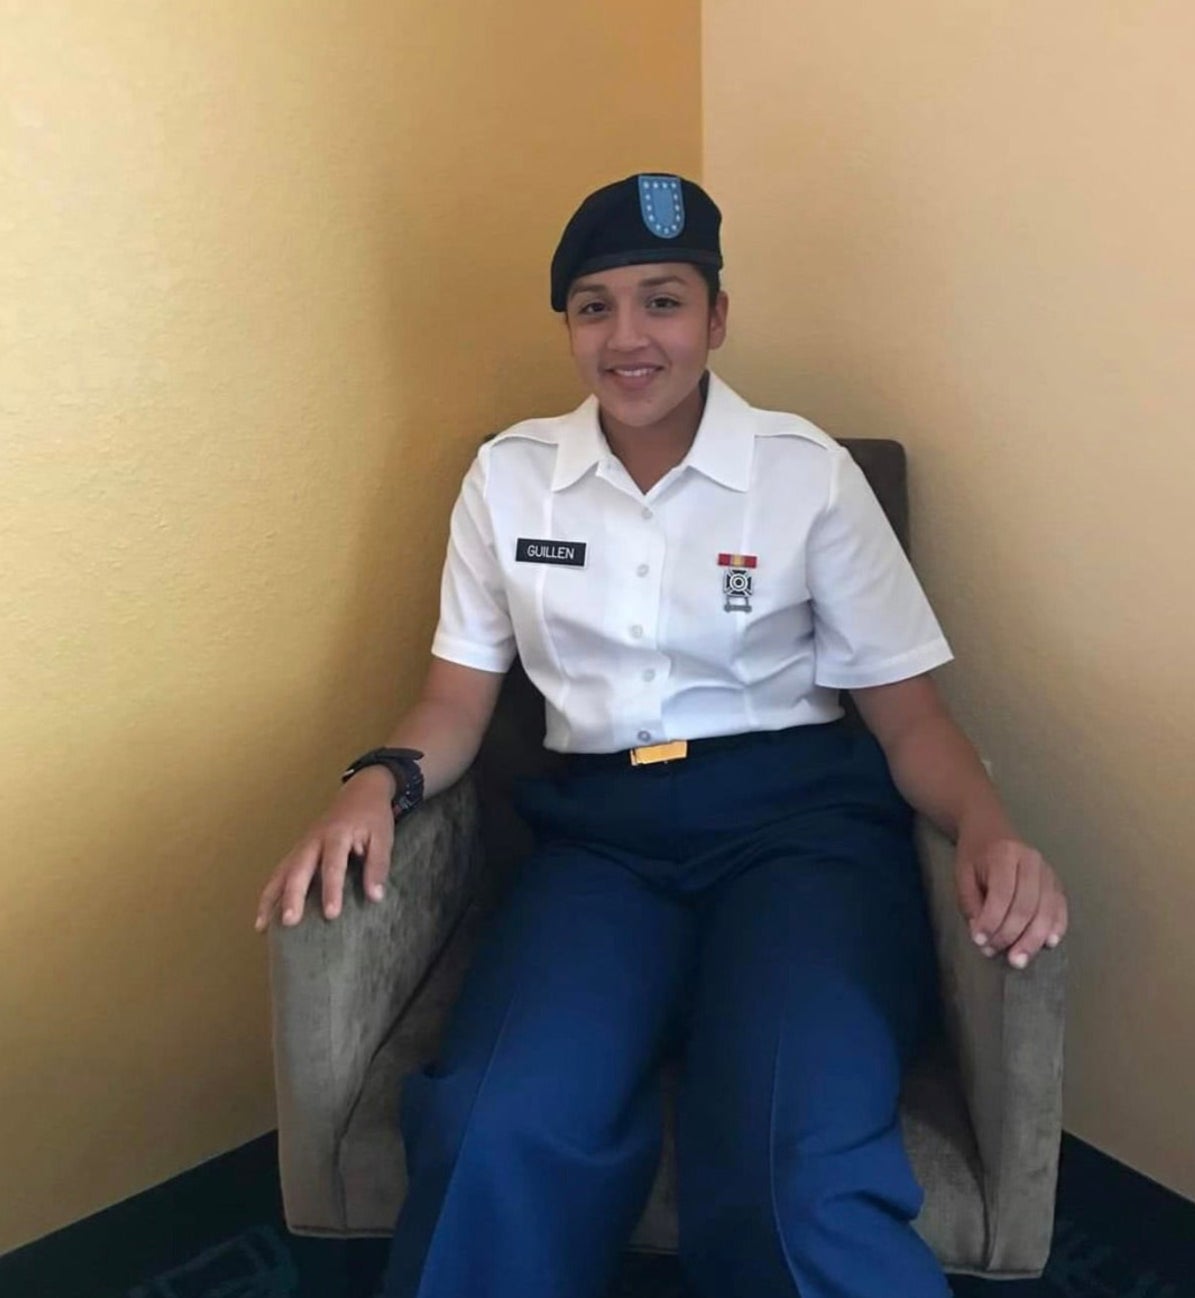 Vanessa Guillen se unió al ejército inmediatamente después de salir de preparatoria, inspirada por otros miembros de la familia en servicio, señala su hermana